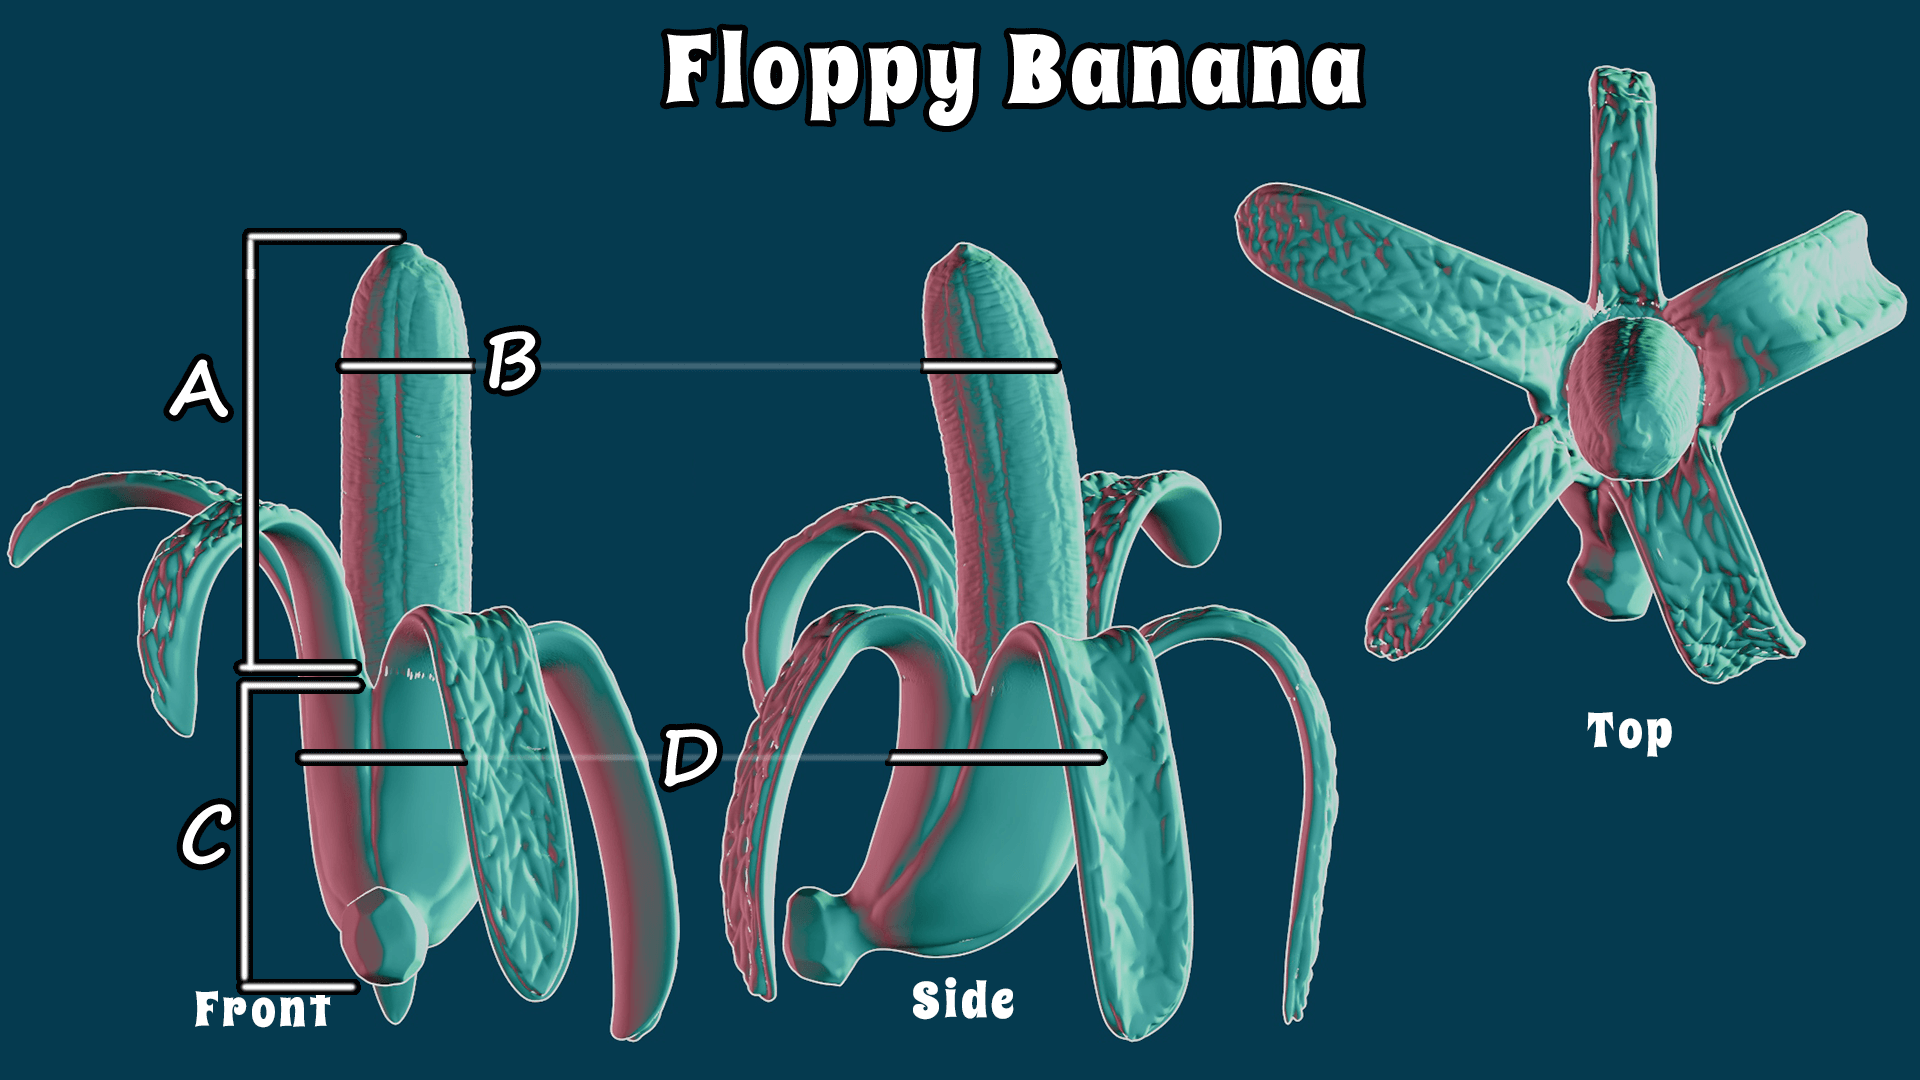 Floppy Banana